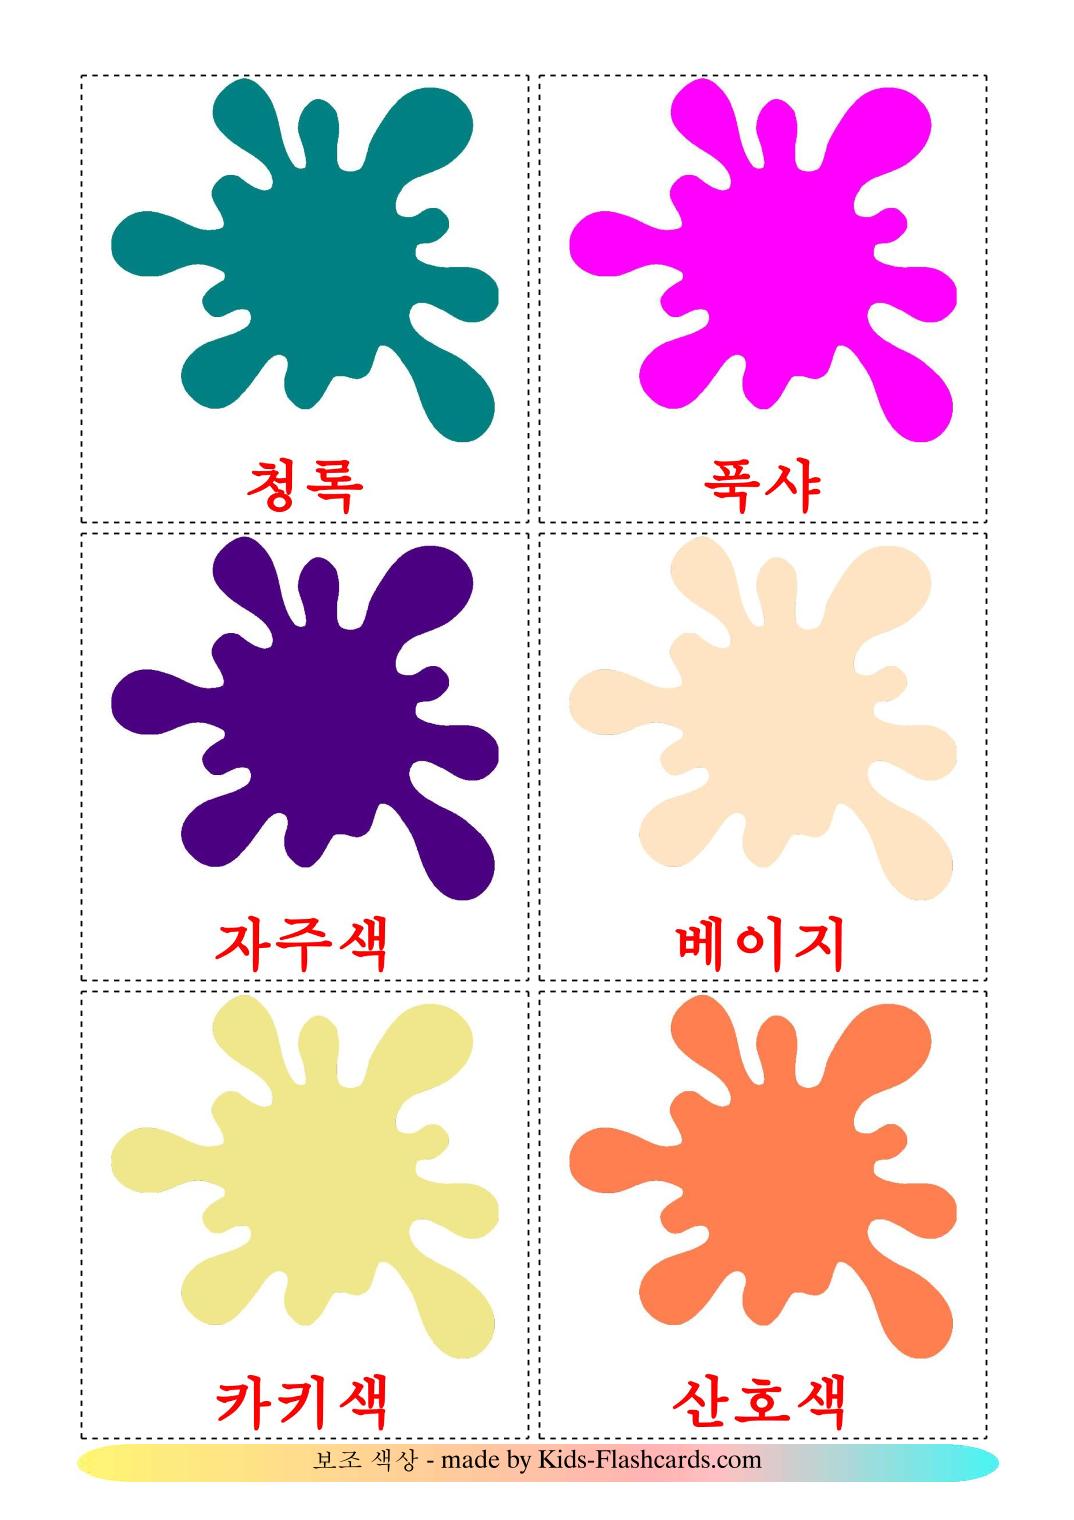 Cores secondarias - 20 Flashcards coreanoes gratuitos para impressão